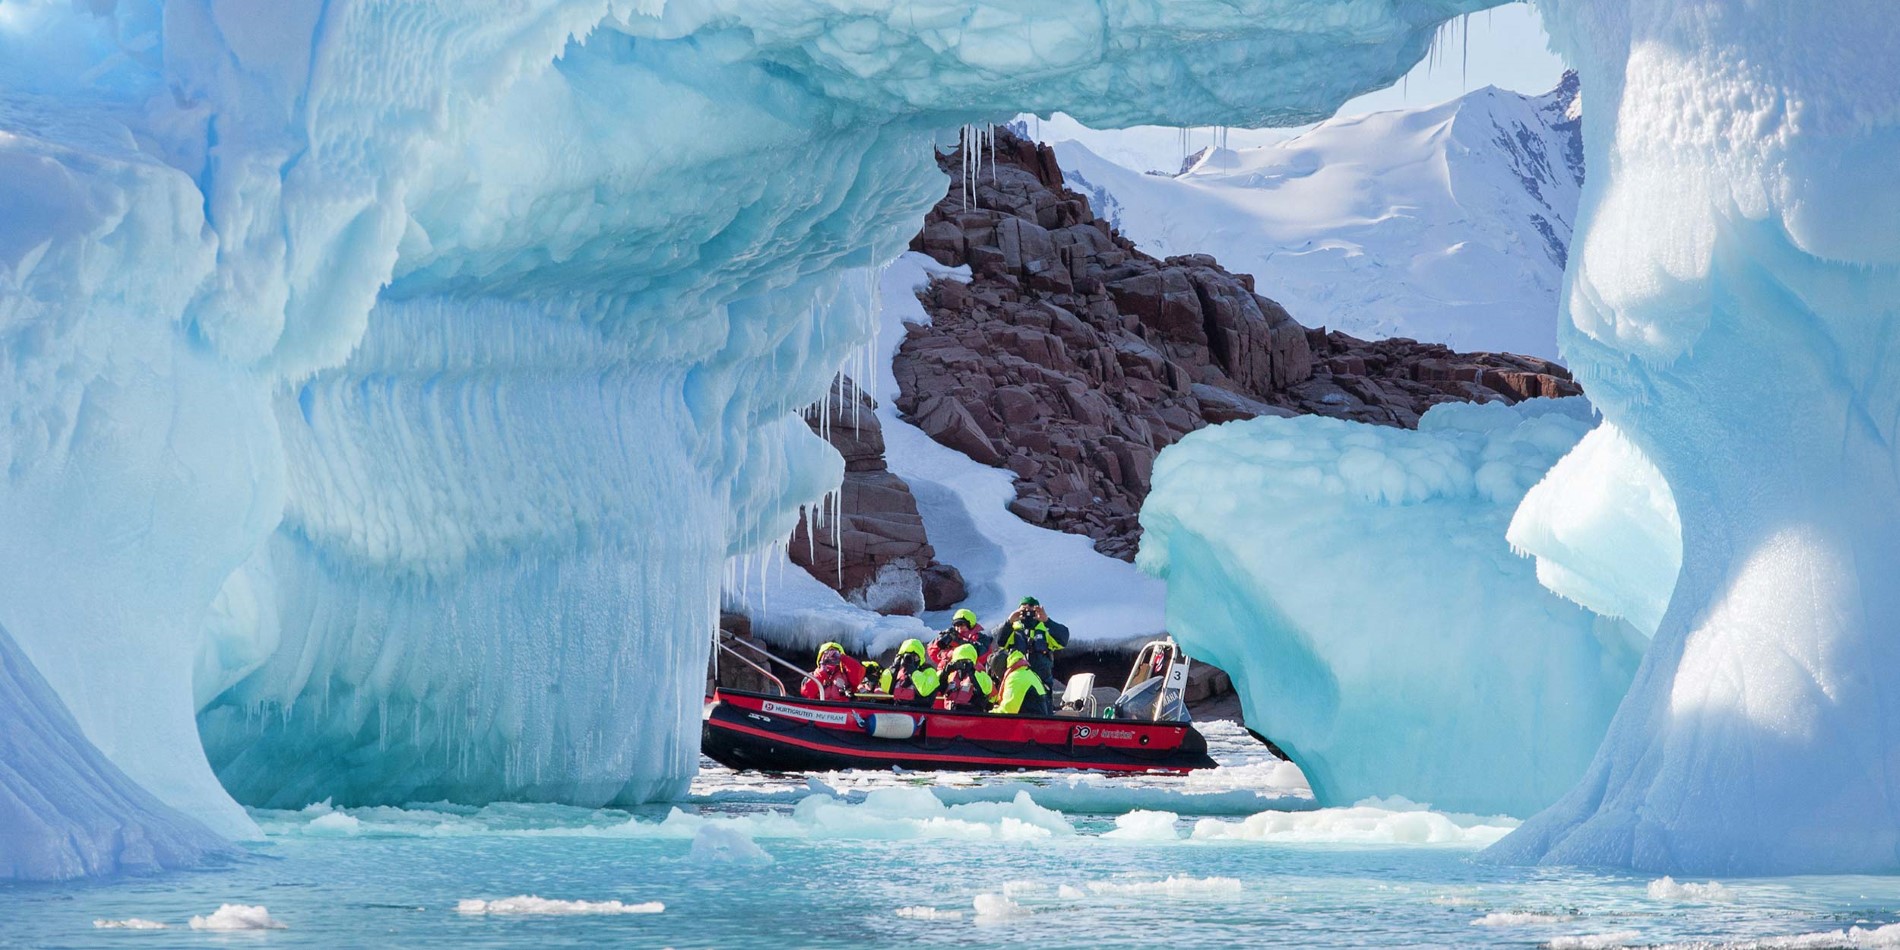 Groupe de touristes dans le petit bateau parmi les formations spectaculaires de glace